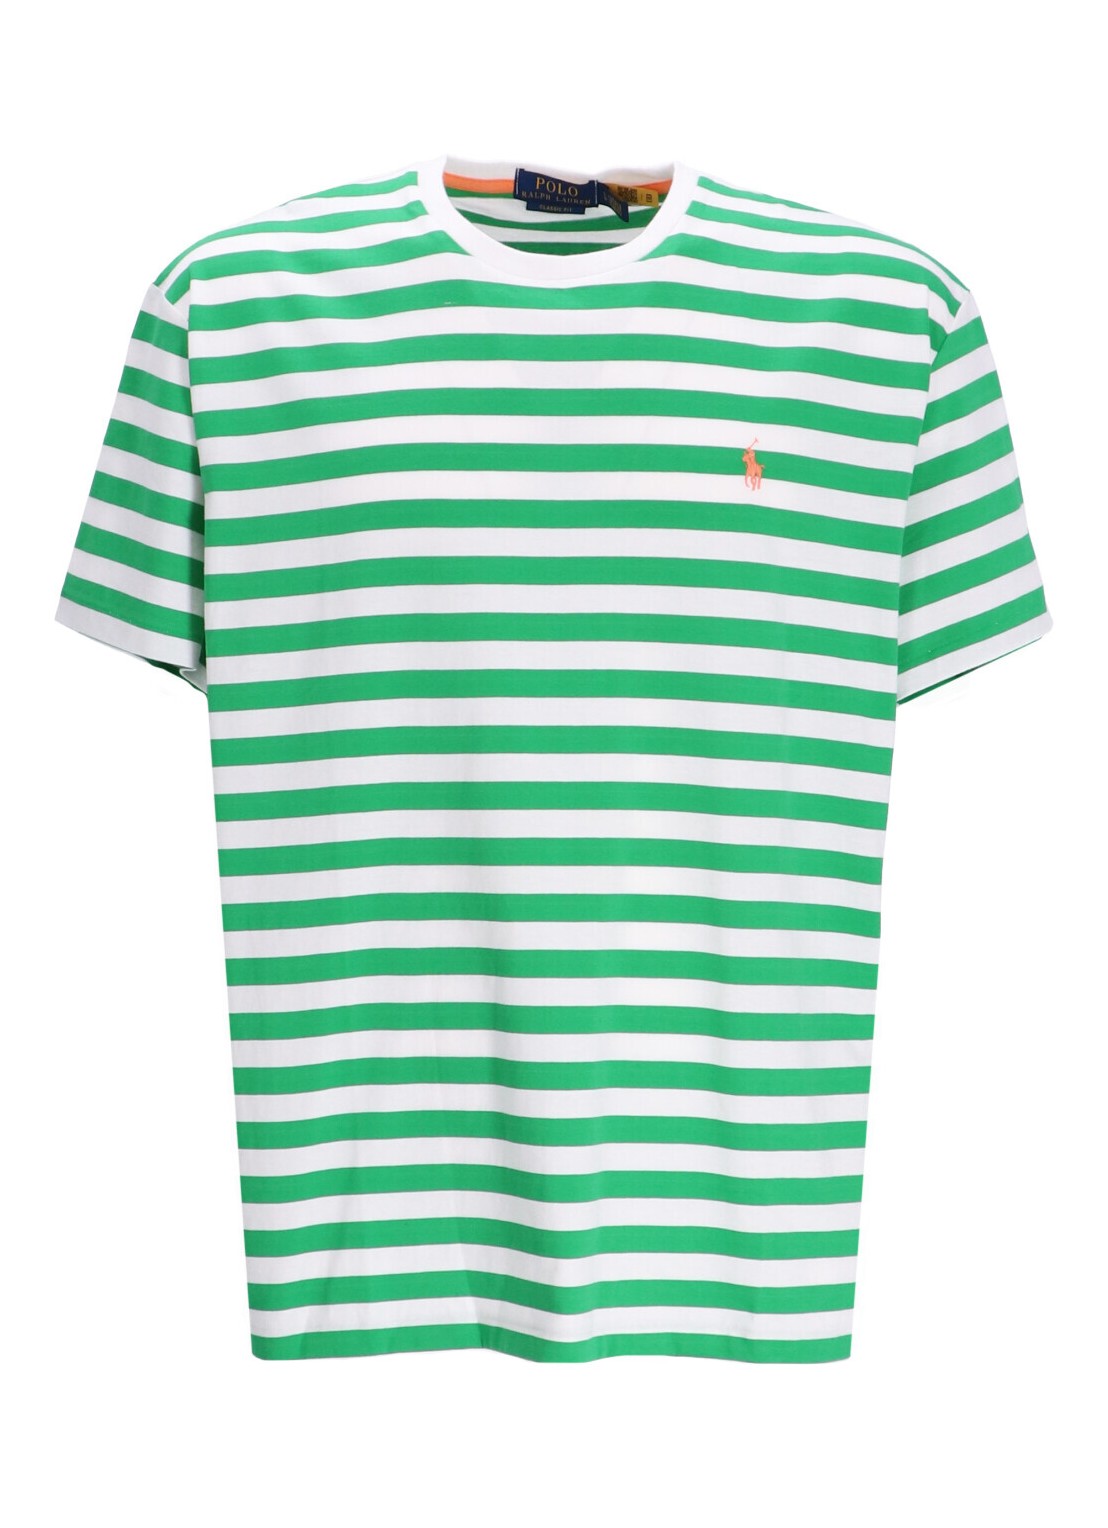 Camiseta polo ralph lauren t-shirt mansscnm18-short sleeve-t-shirt - 710926999004 preppy green white